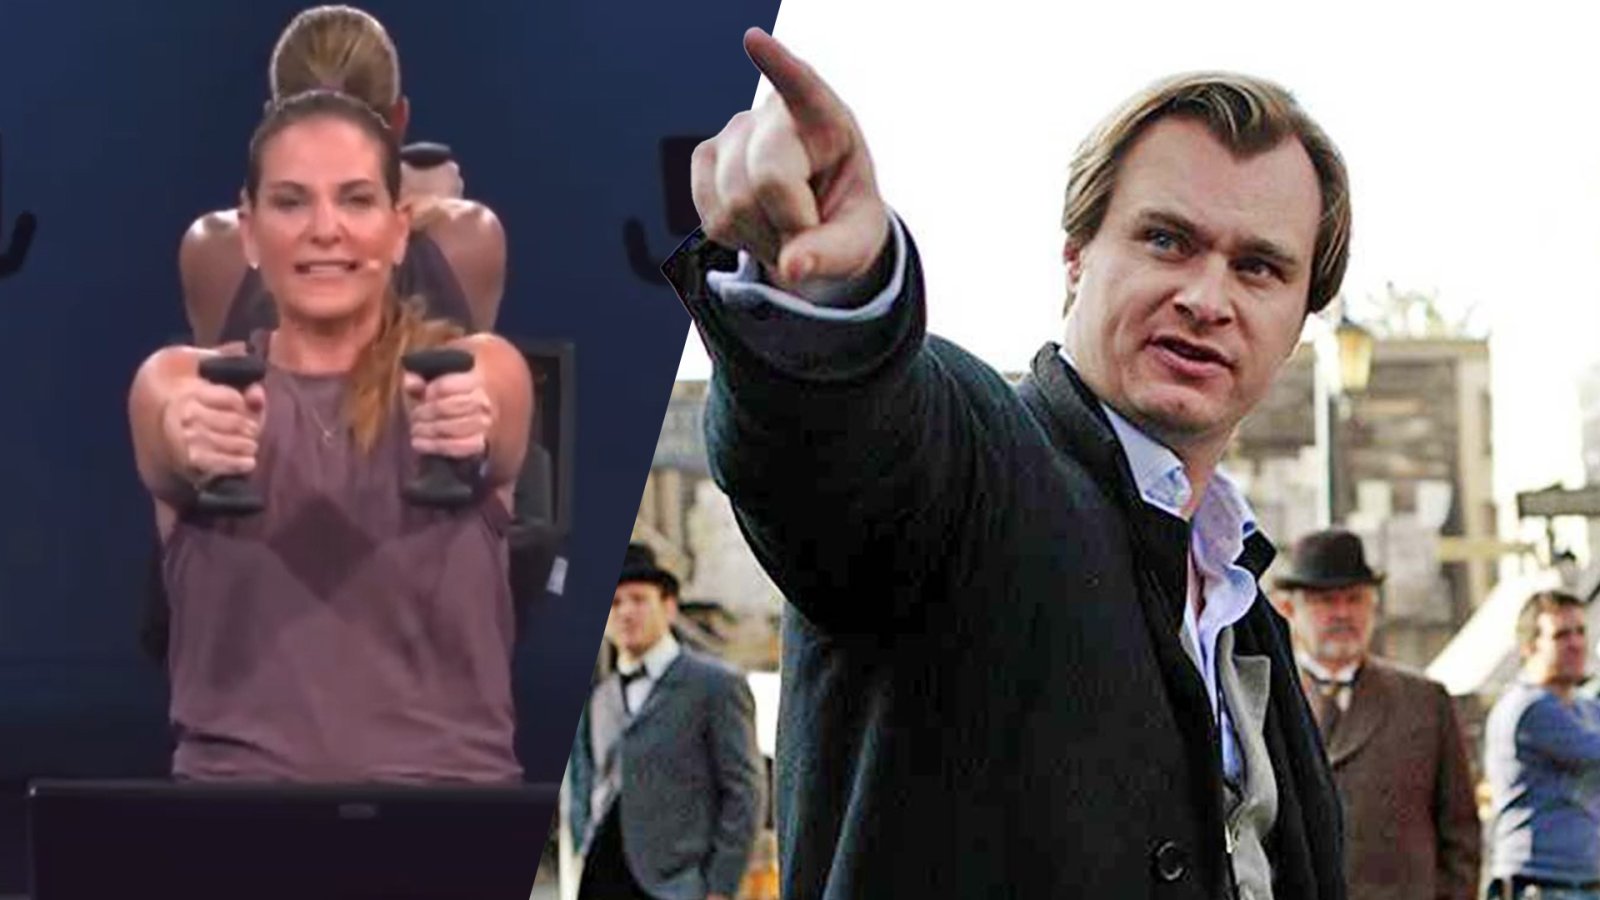 “เอาเวลาชั้นคืนมา!” Christopher Nolan ถูกเทรนเนอร์ออกกำลังกายวิจารณ์หนัง ‘Tenet’ แต่ไม่รู้ตัวว่าเสด็จพ่อก็ดูด้วย!